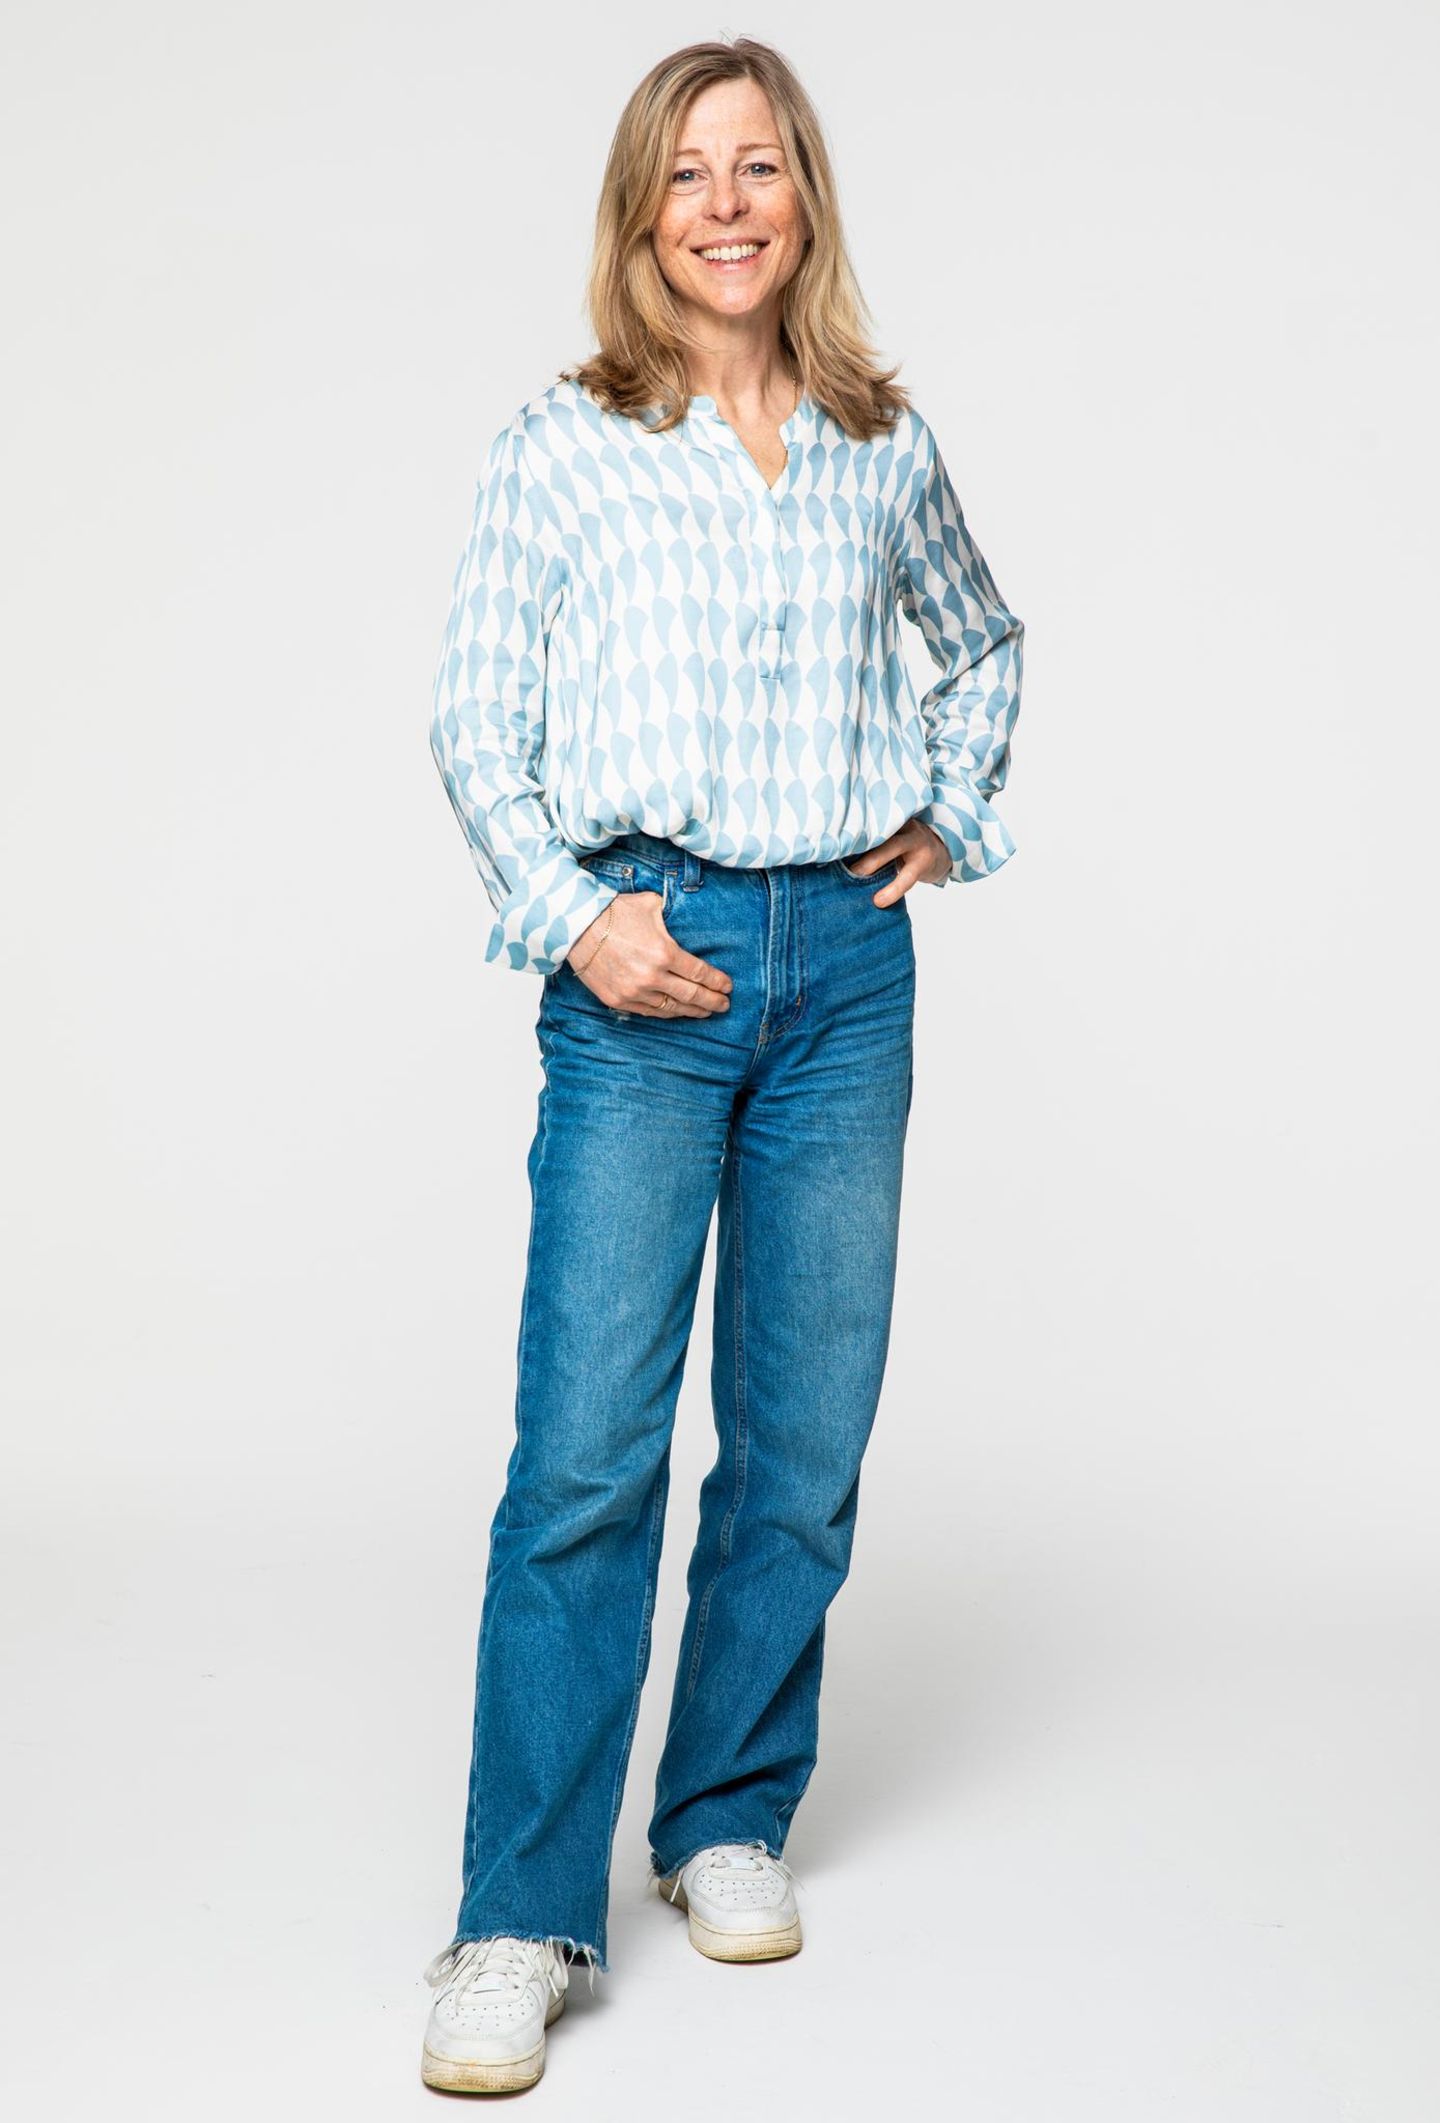 Nicole ist als Redakteurin meistens sportlich gestylt. "Ich liebe Jeans und Turnschuhe.“